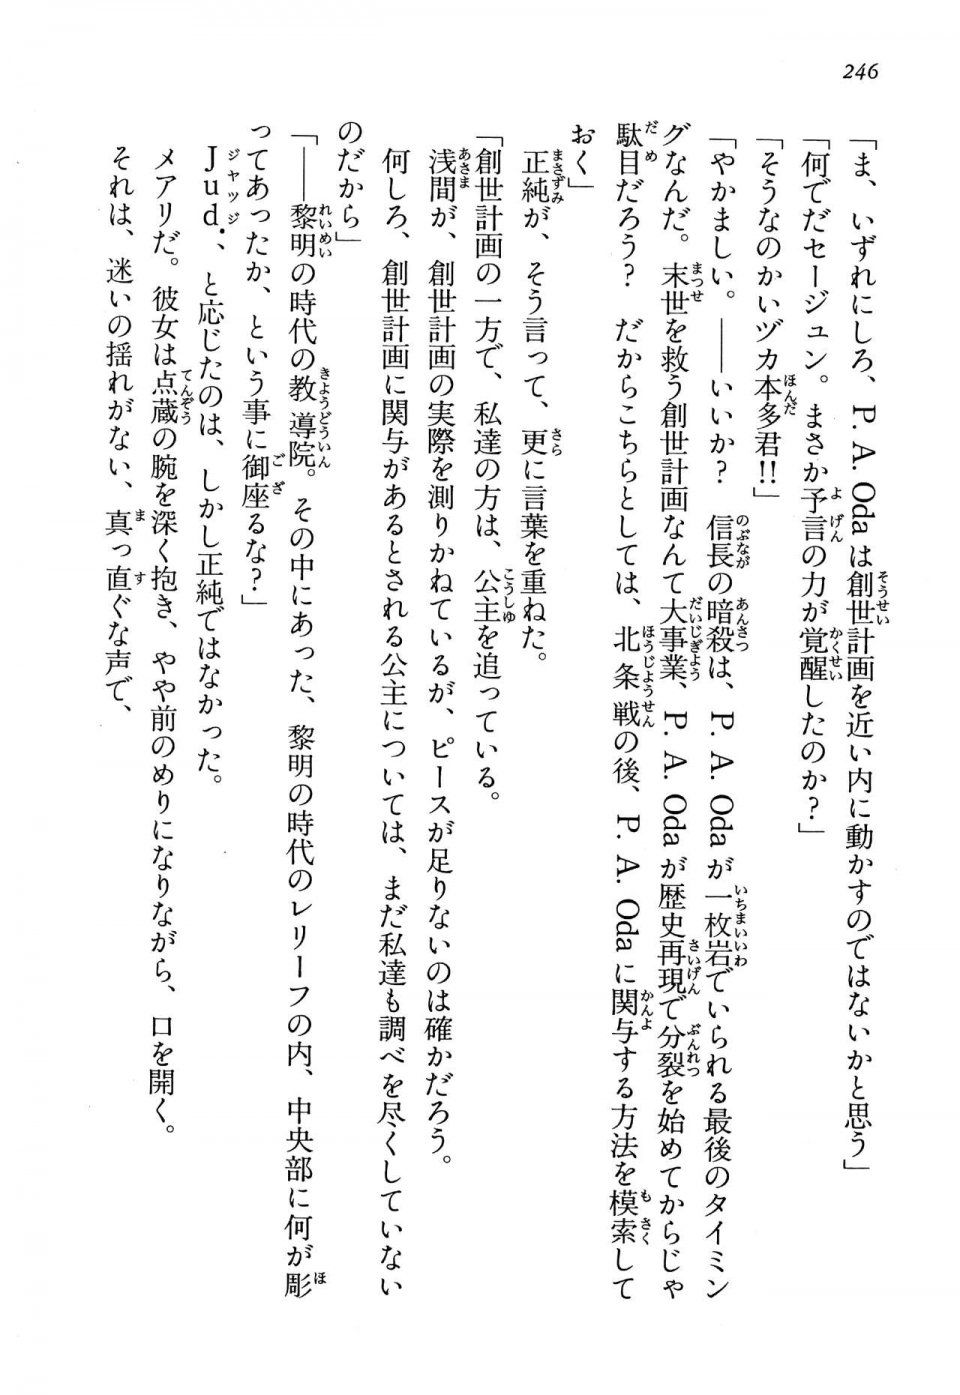 Kyoukai Senjou no Horizon LN Vol 13(6A) - Photo #246